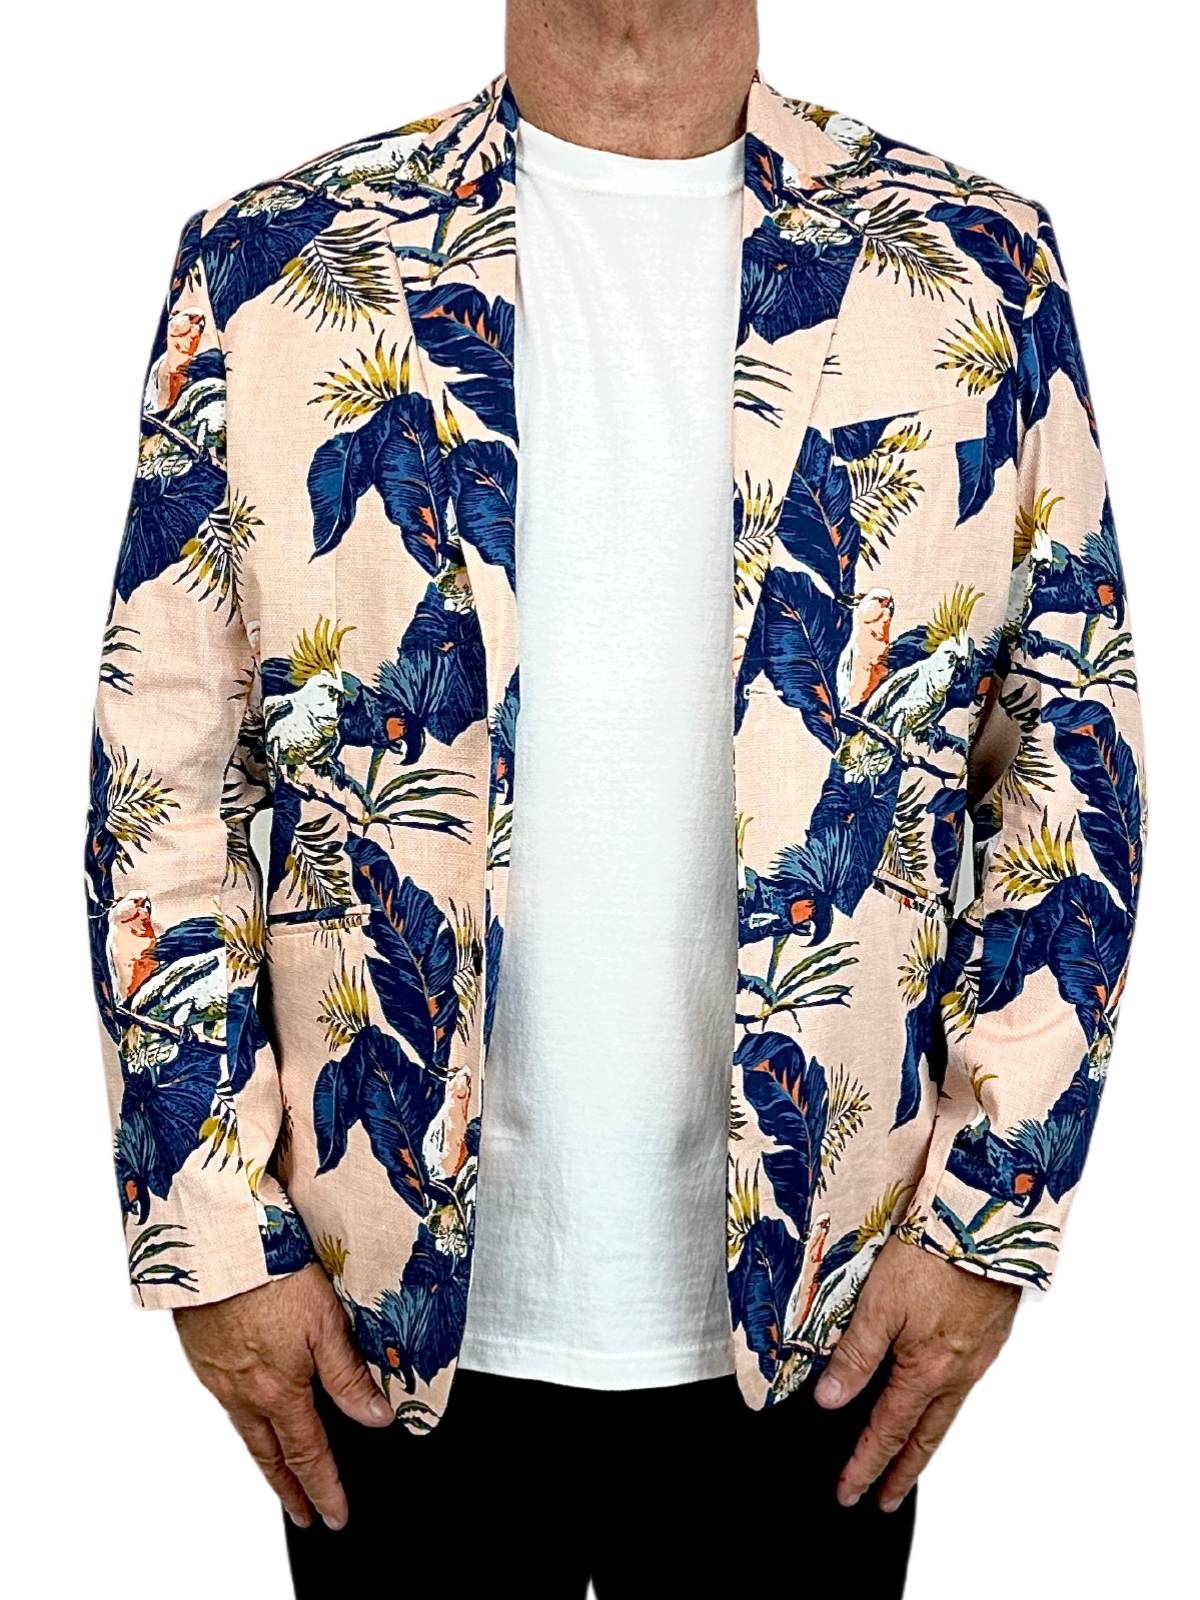 Cheeky Hawaiian Cotton Jacket - Blue/Pink